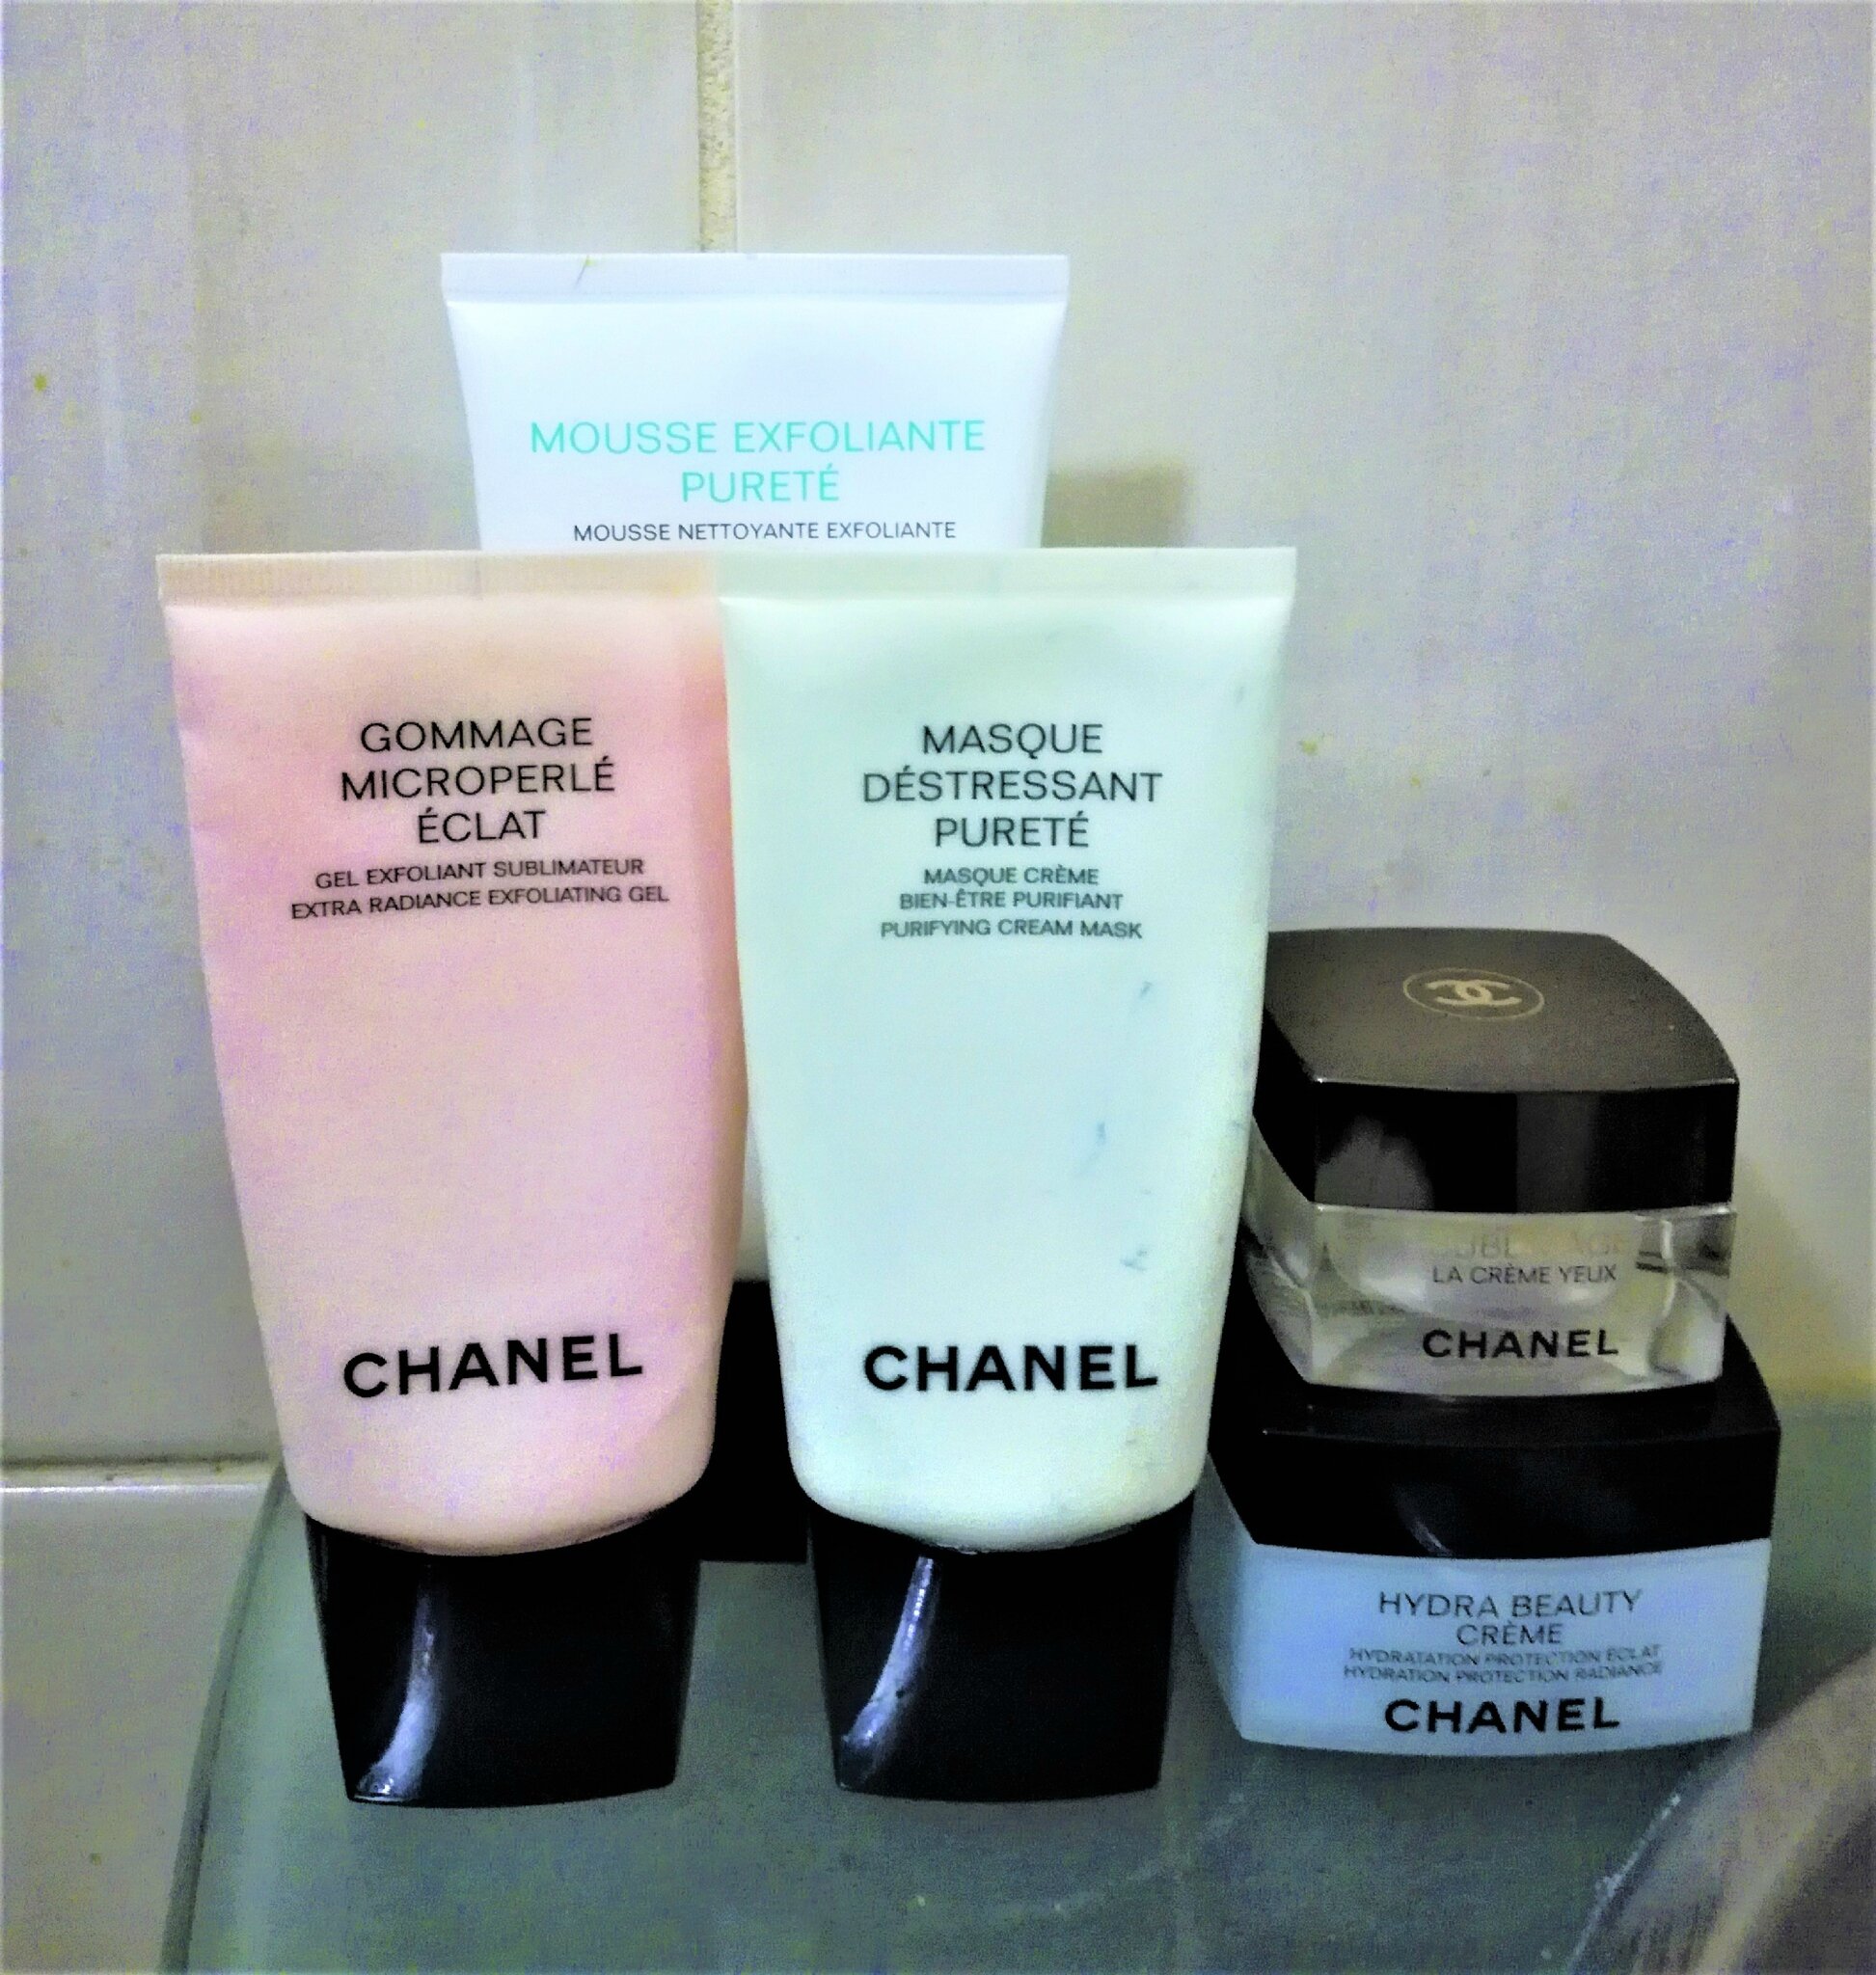 Chanel lance une nouvelle ligne de cosmétiques qui réinvente les codes  beauté de la maison  Vogue France